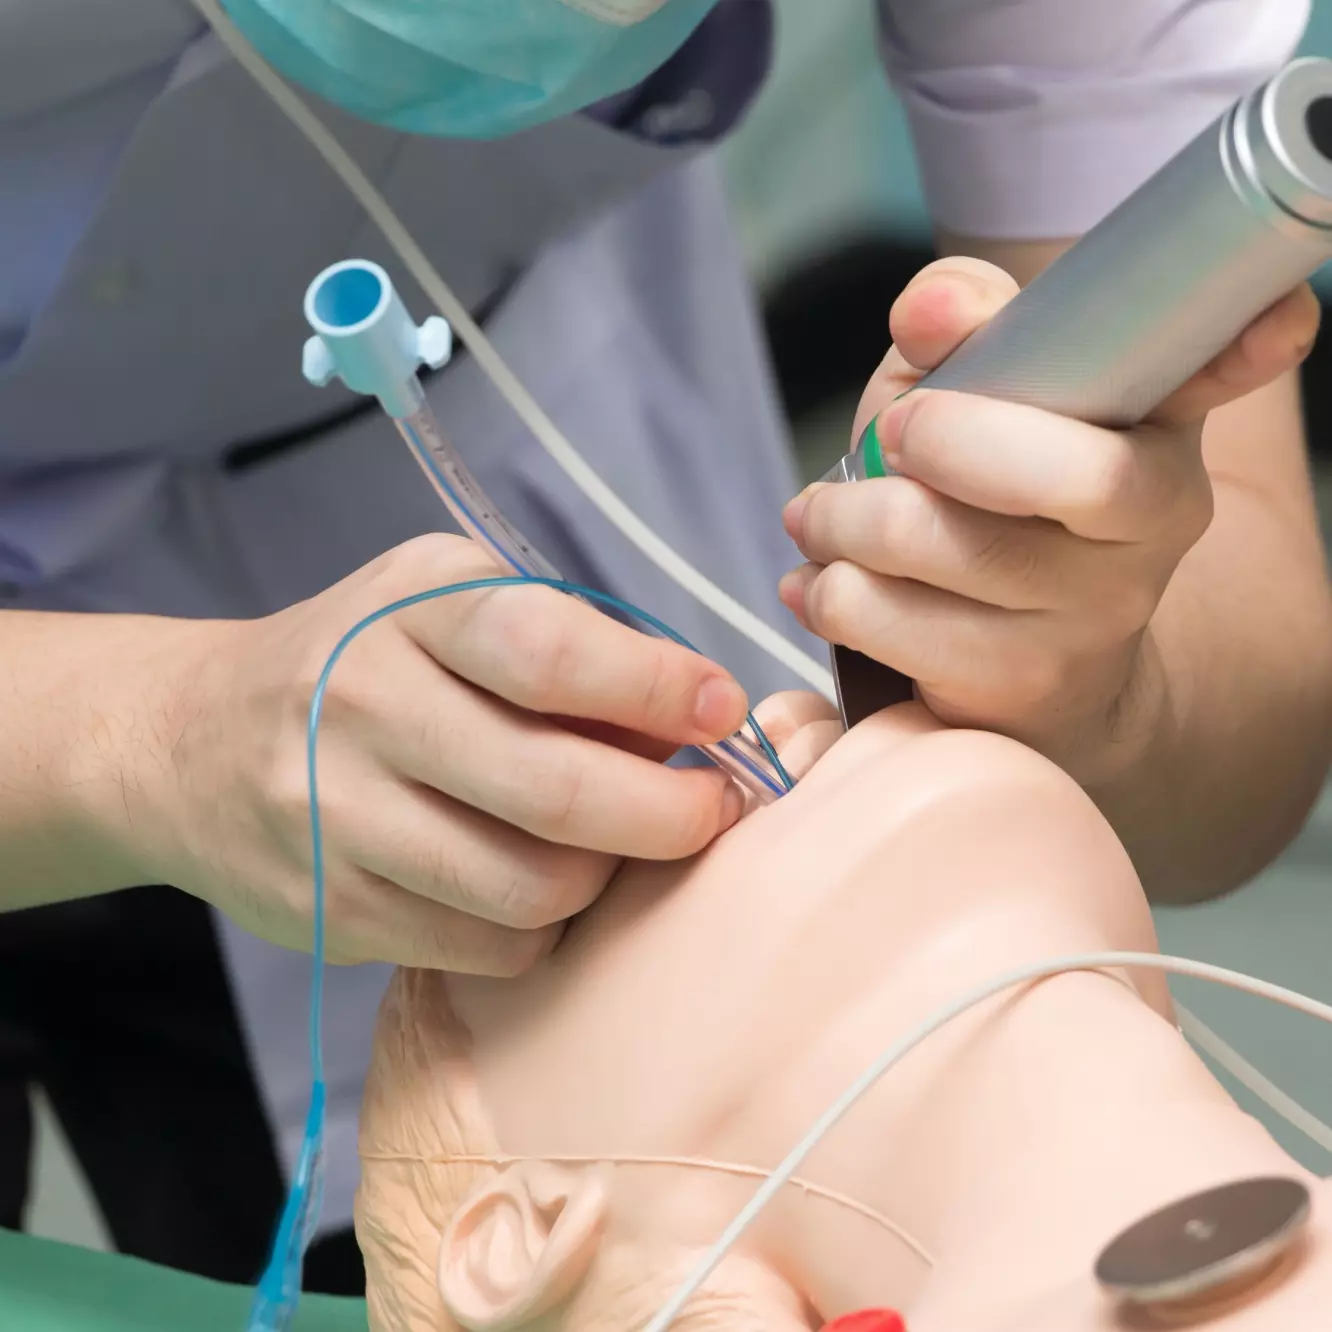 Ein Praktikant übt an einer Puppe die Intubation.